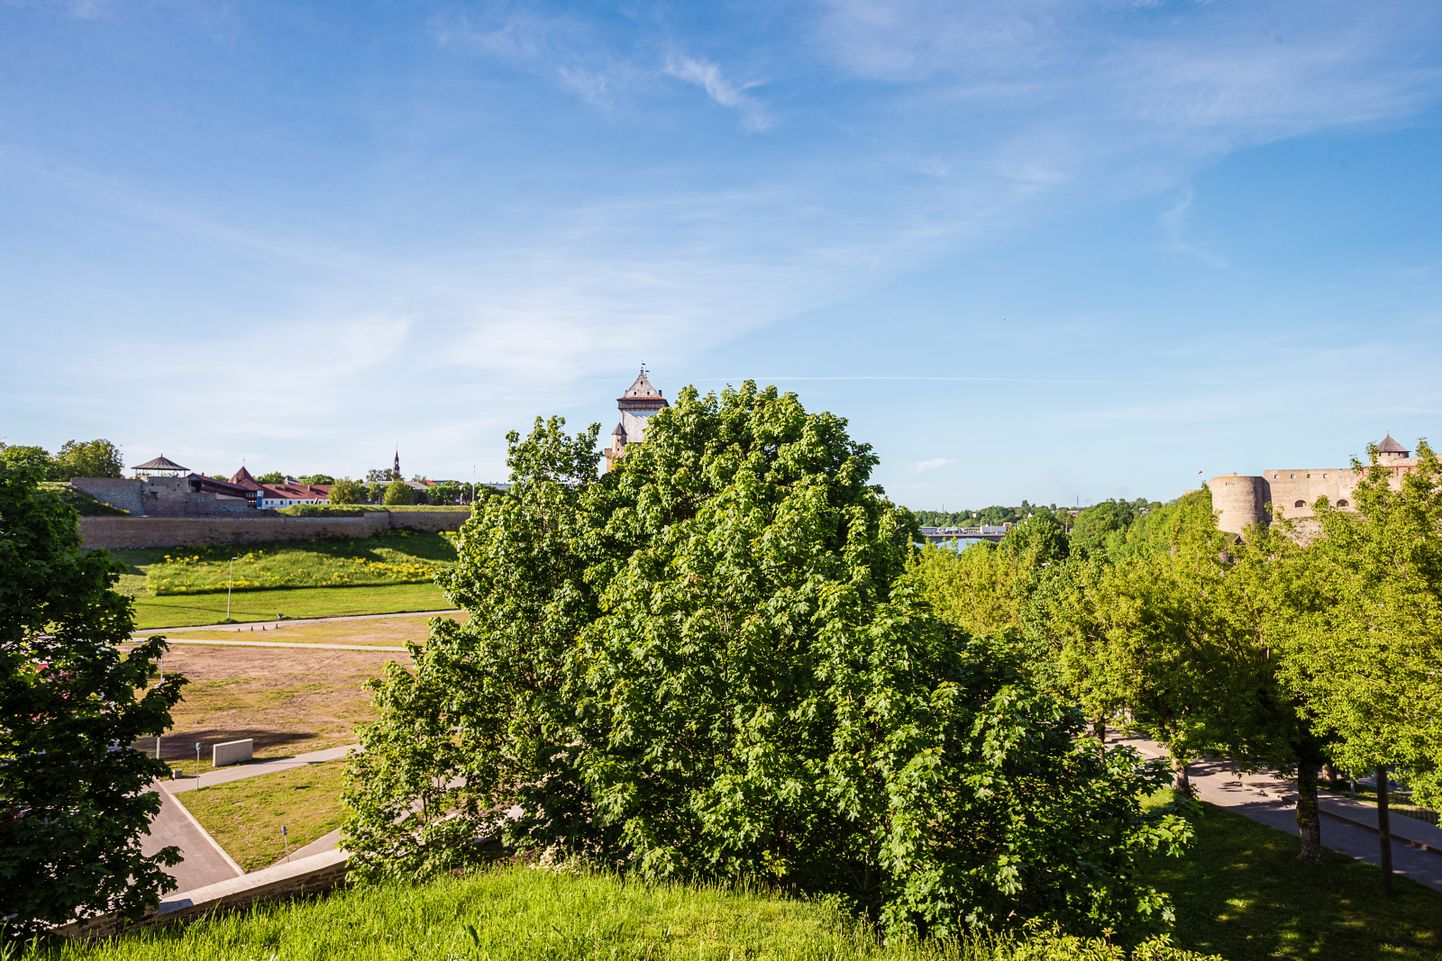 See vaade avaneb turistide seas kõige populaarsemalt Narva vaateplatvormilt. Ent siin ei domineeri mitte piirijõgi ning kahel pool asuvad kindlused, vaid linnas asuv mets. Ja selliseid võsastunud paiku on Narvas teisigi.